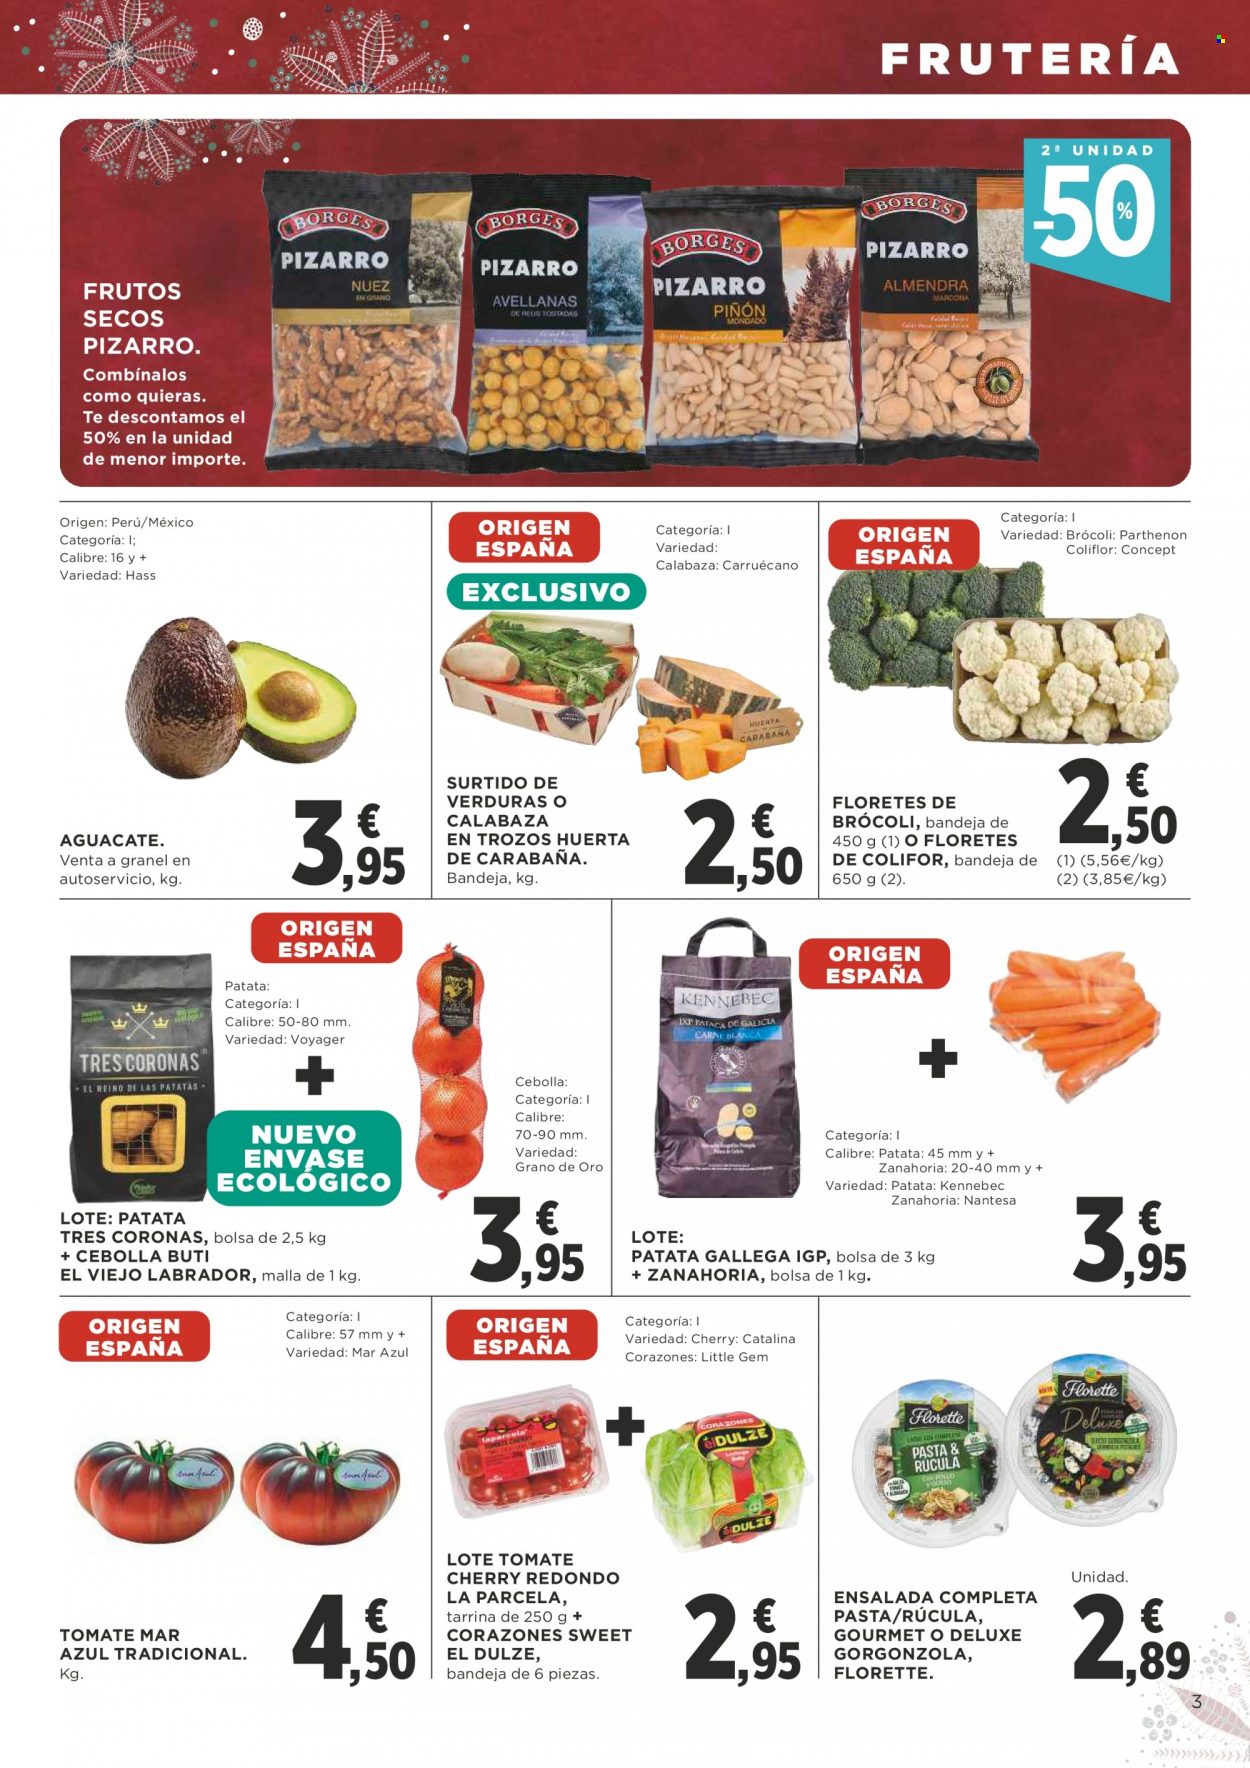 thumbnail - Folleto actual Supercor supermercados - 02/12/21 - 15/12/21 - Ventas - aguacate, patatas, zanahoria, brócoli, cebolla, ensalada, gorgonzola, pasta, frutos secos. Página 3.